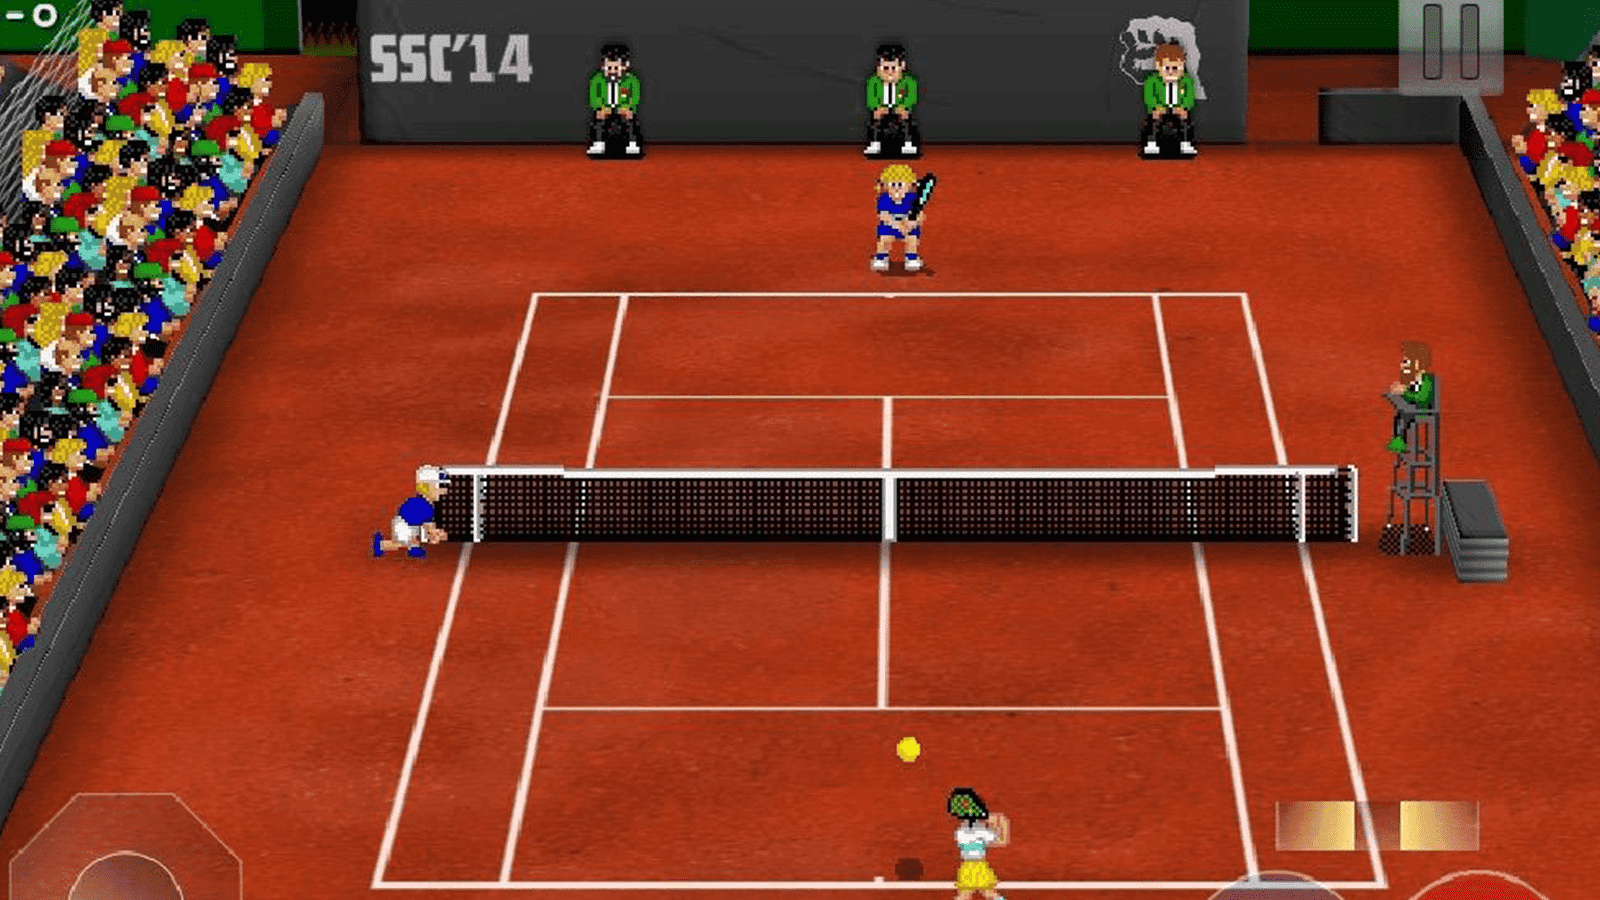 Tennis Champs ist ein kompetitives Multiplayer-NFT-Spiel